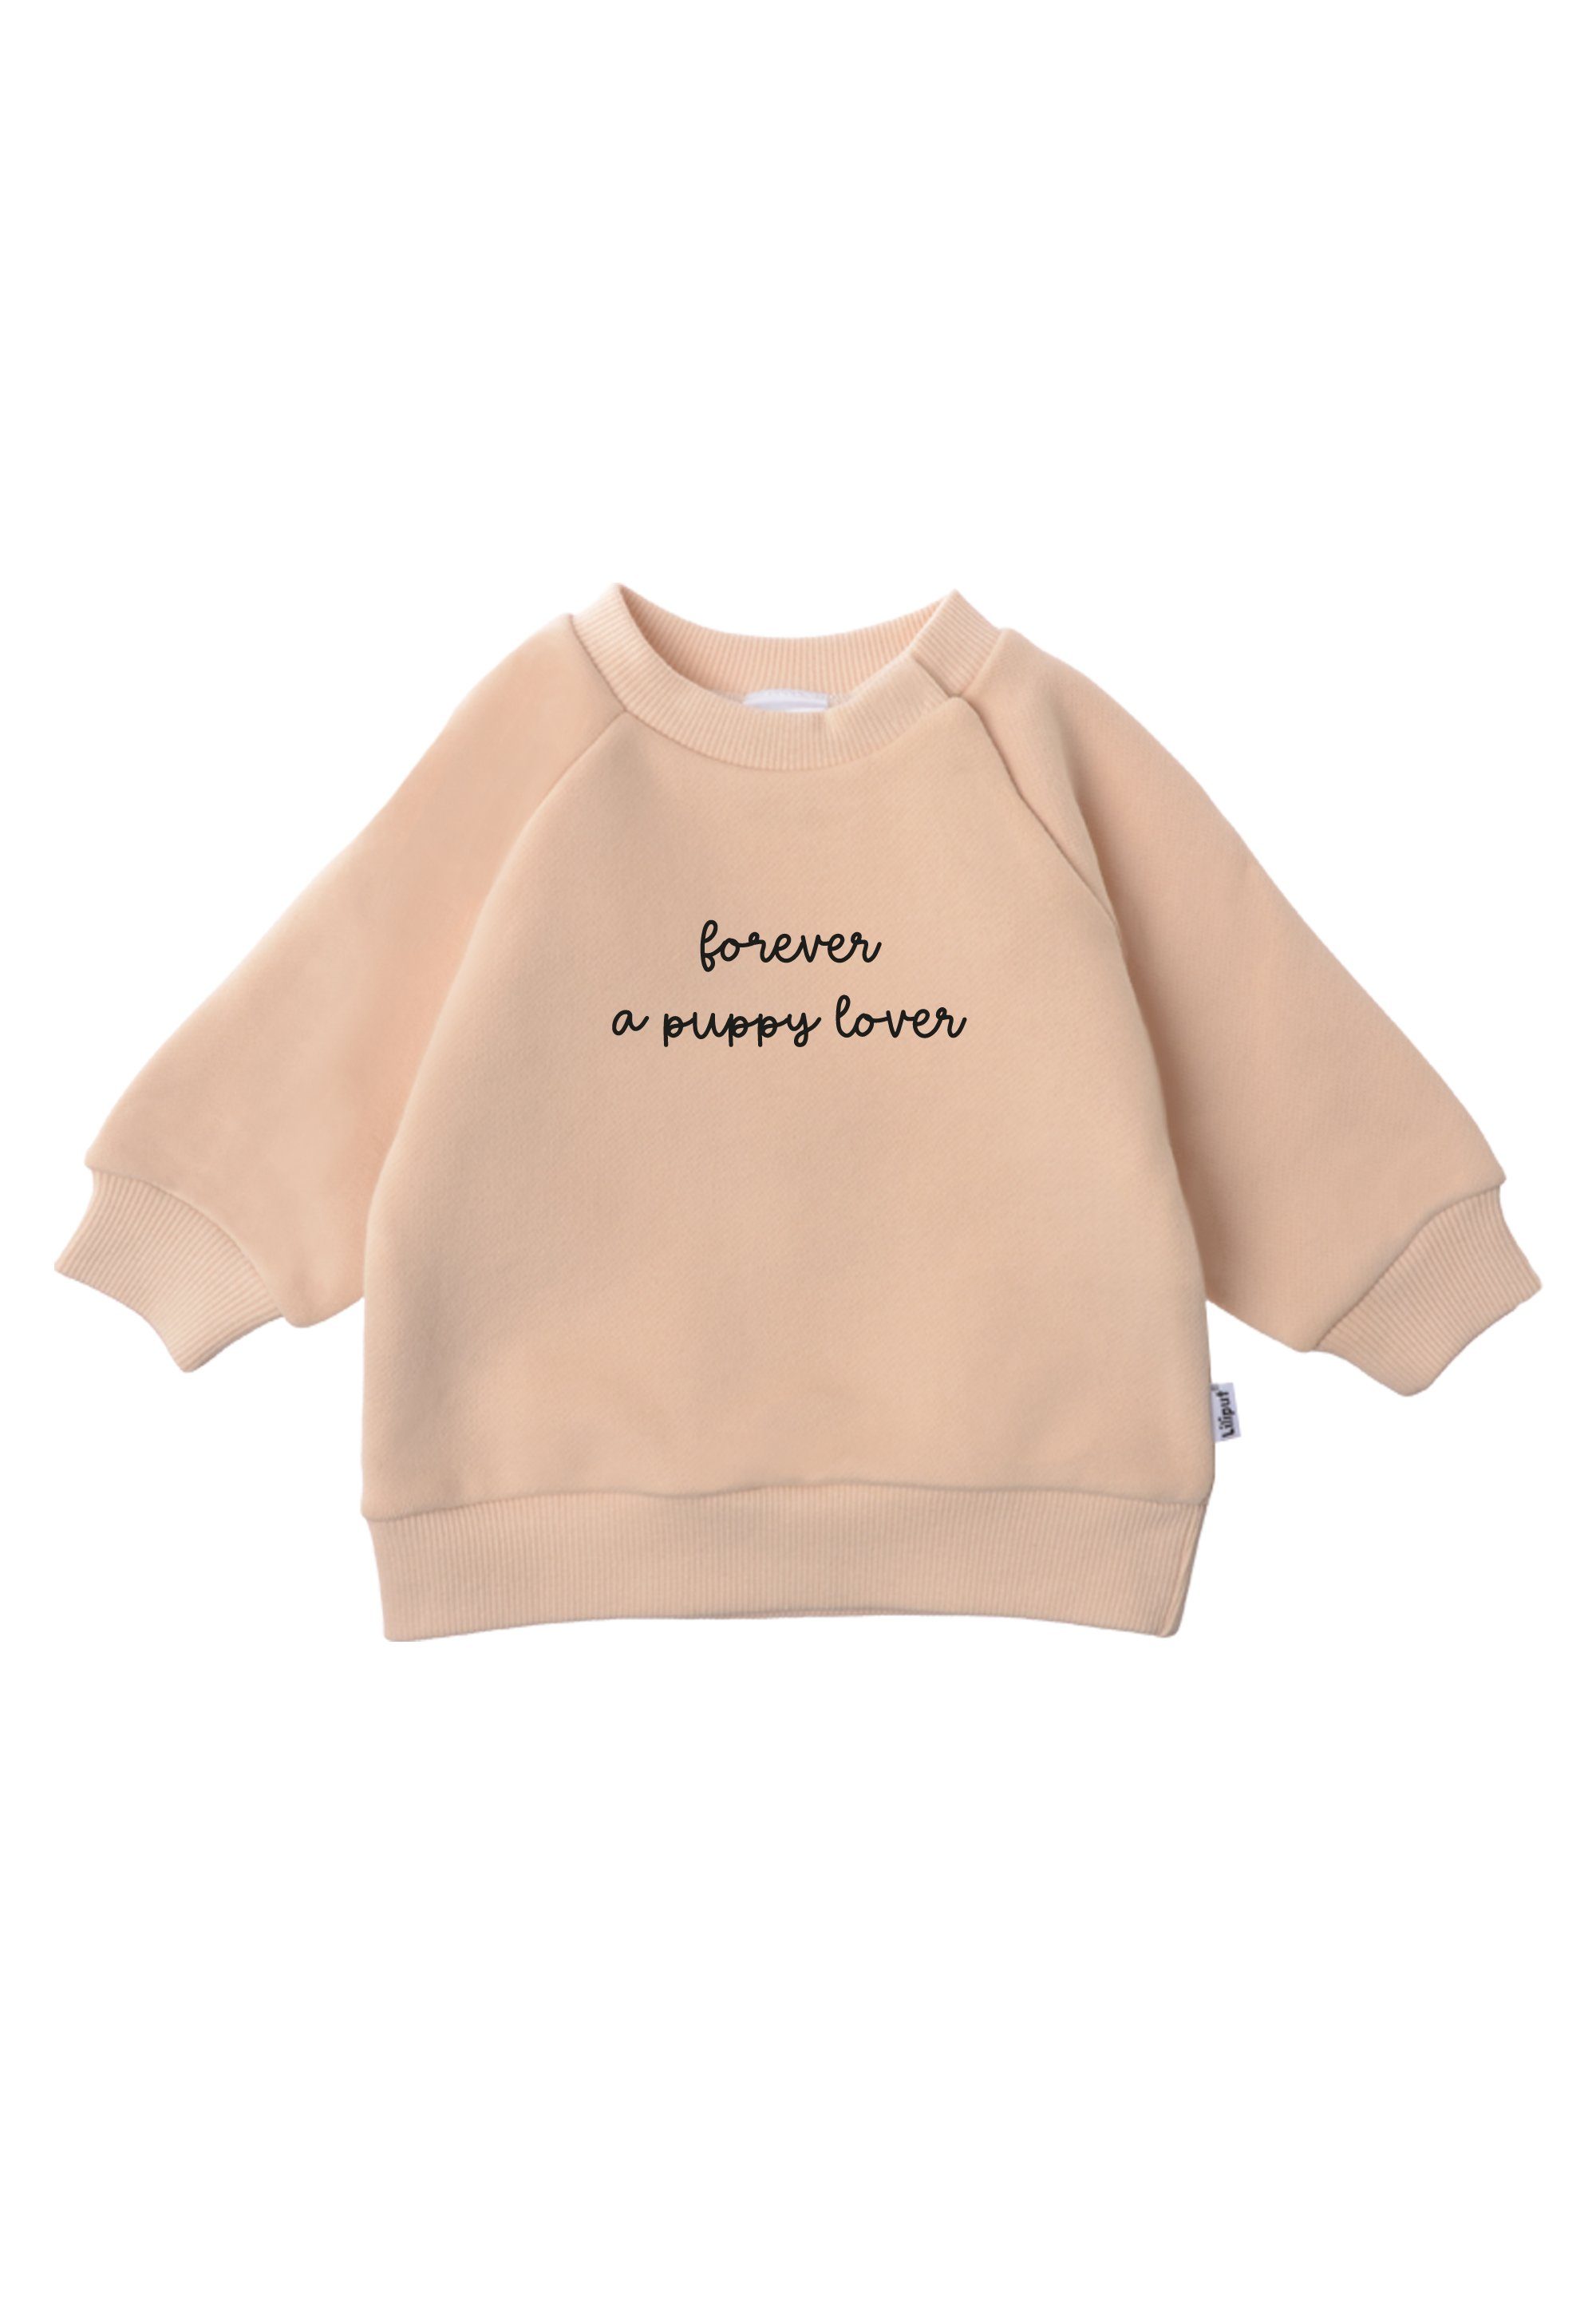 Liliput Sweatshirt aus lover a Forever puppy weichem Material